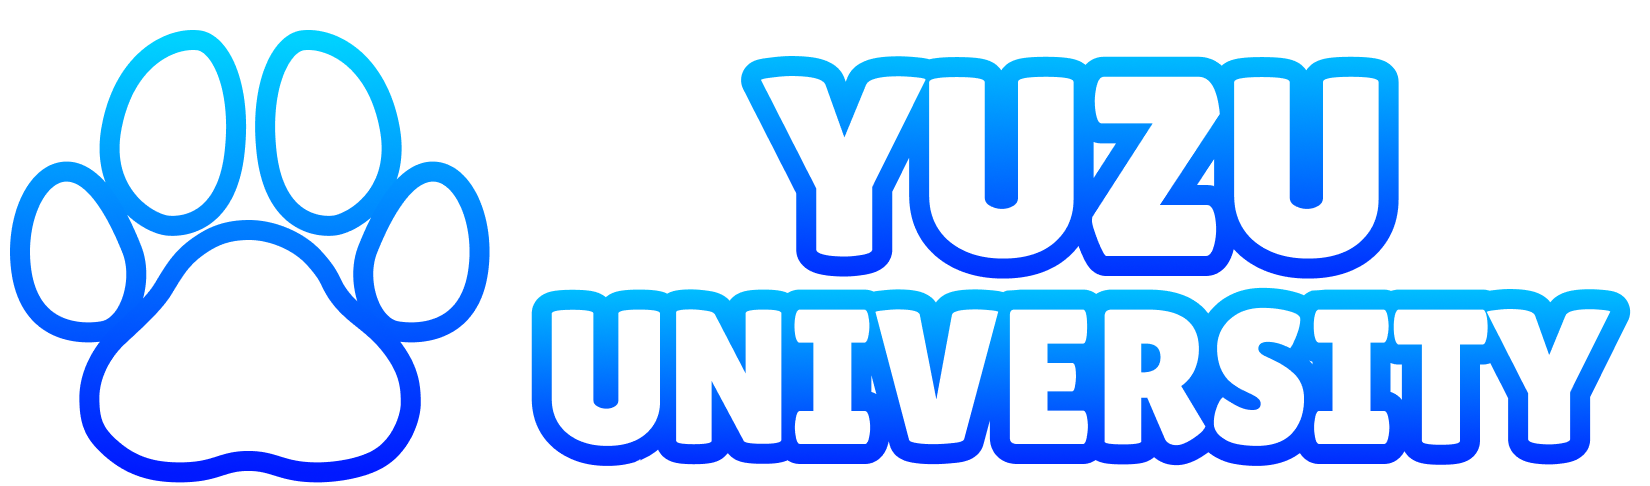 Yuzu university logo